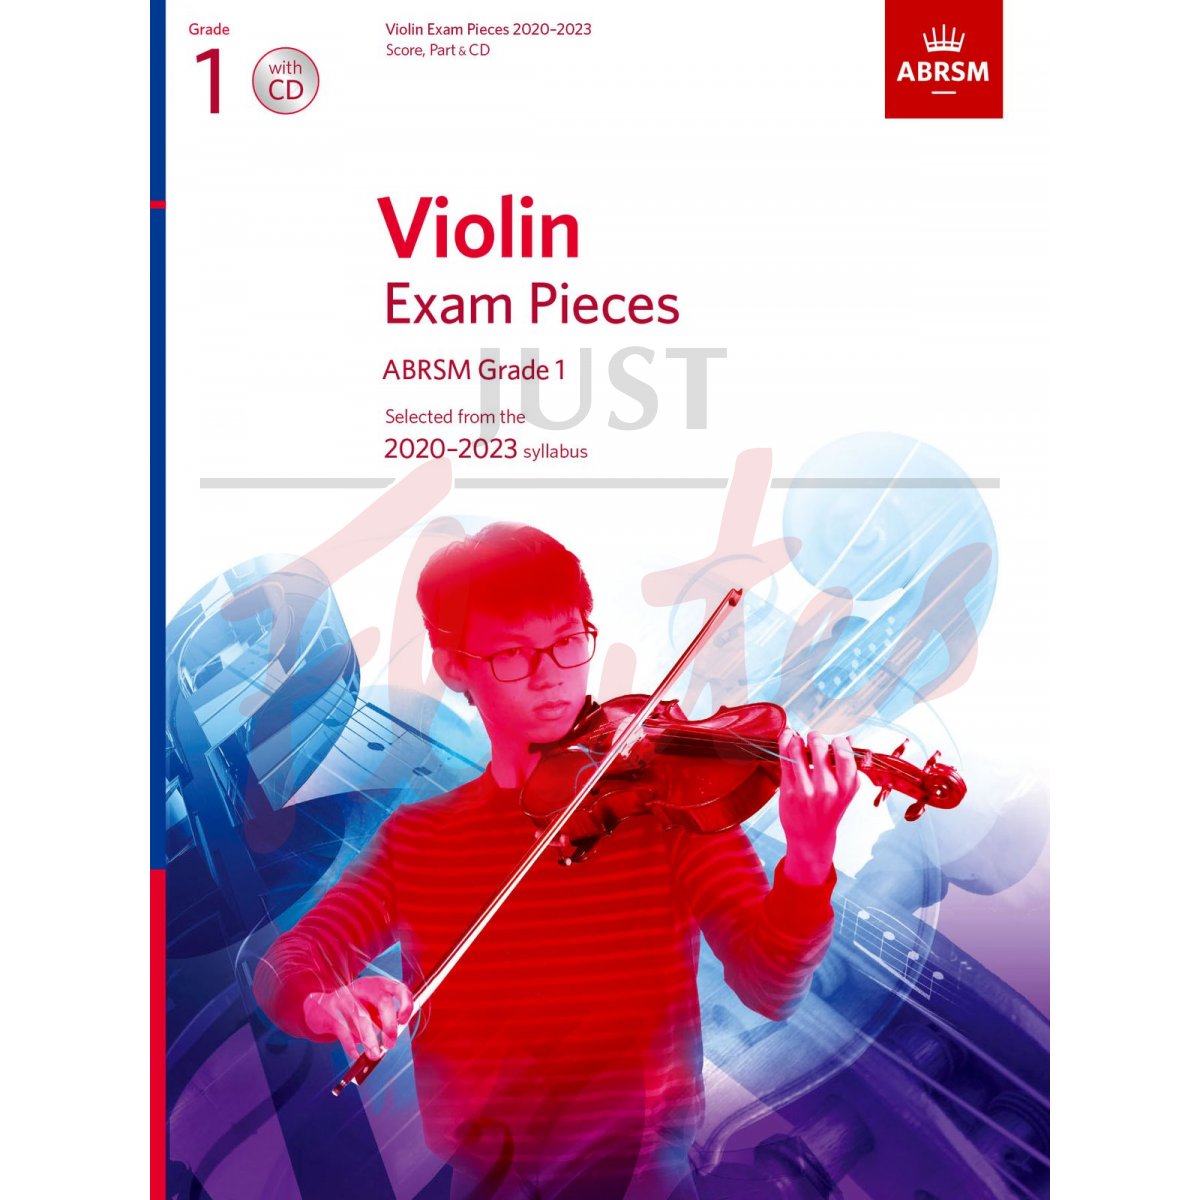 Violin Exam Pieces 2020-2023, Grade 1